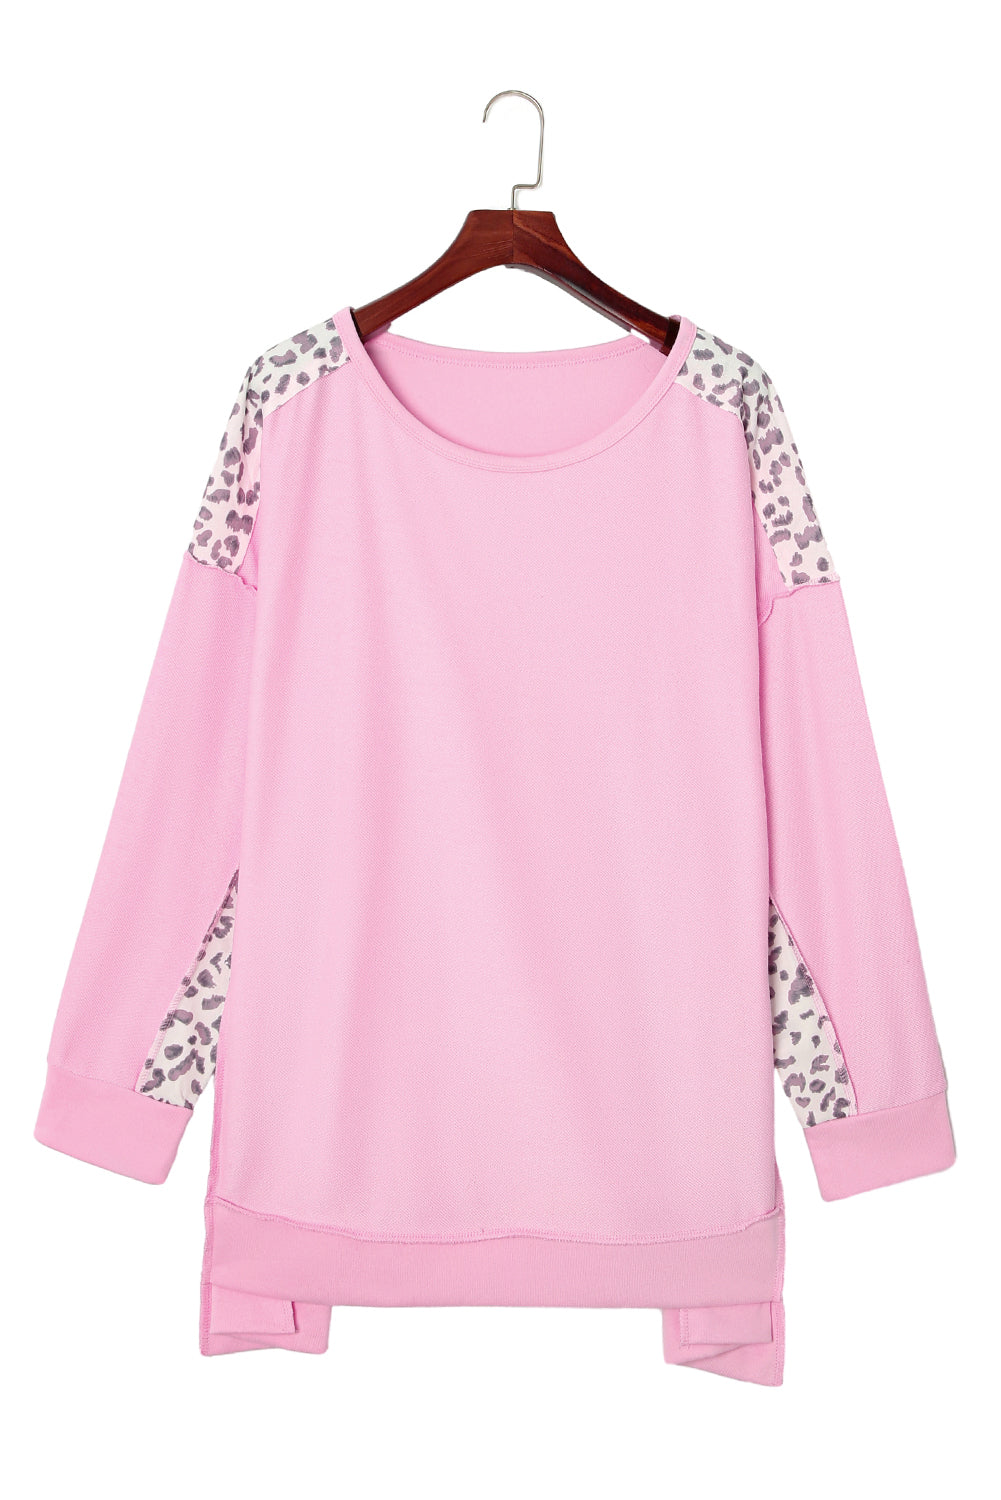 Ružičasta majica veće veličine s otkrivenim šavovima u obliku leoparda